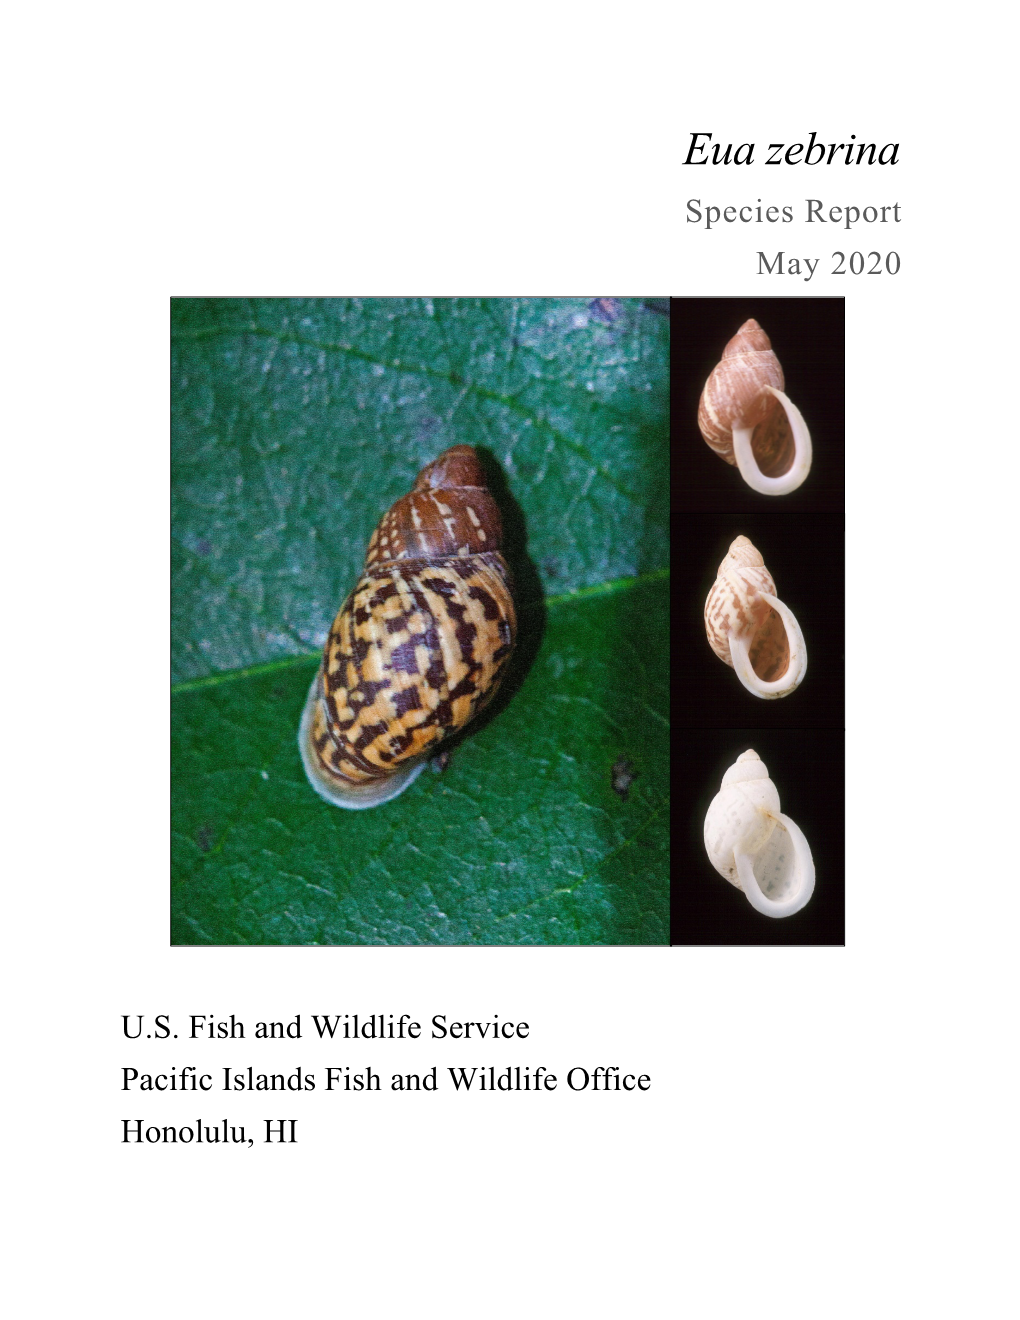 Eua Zebrina Species Report May 2020